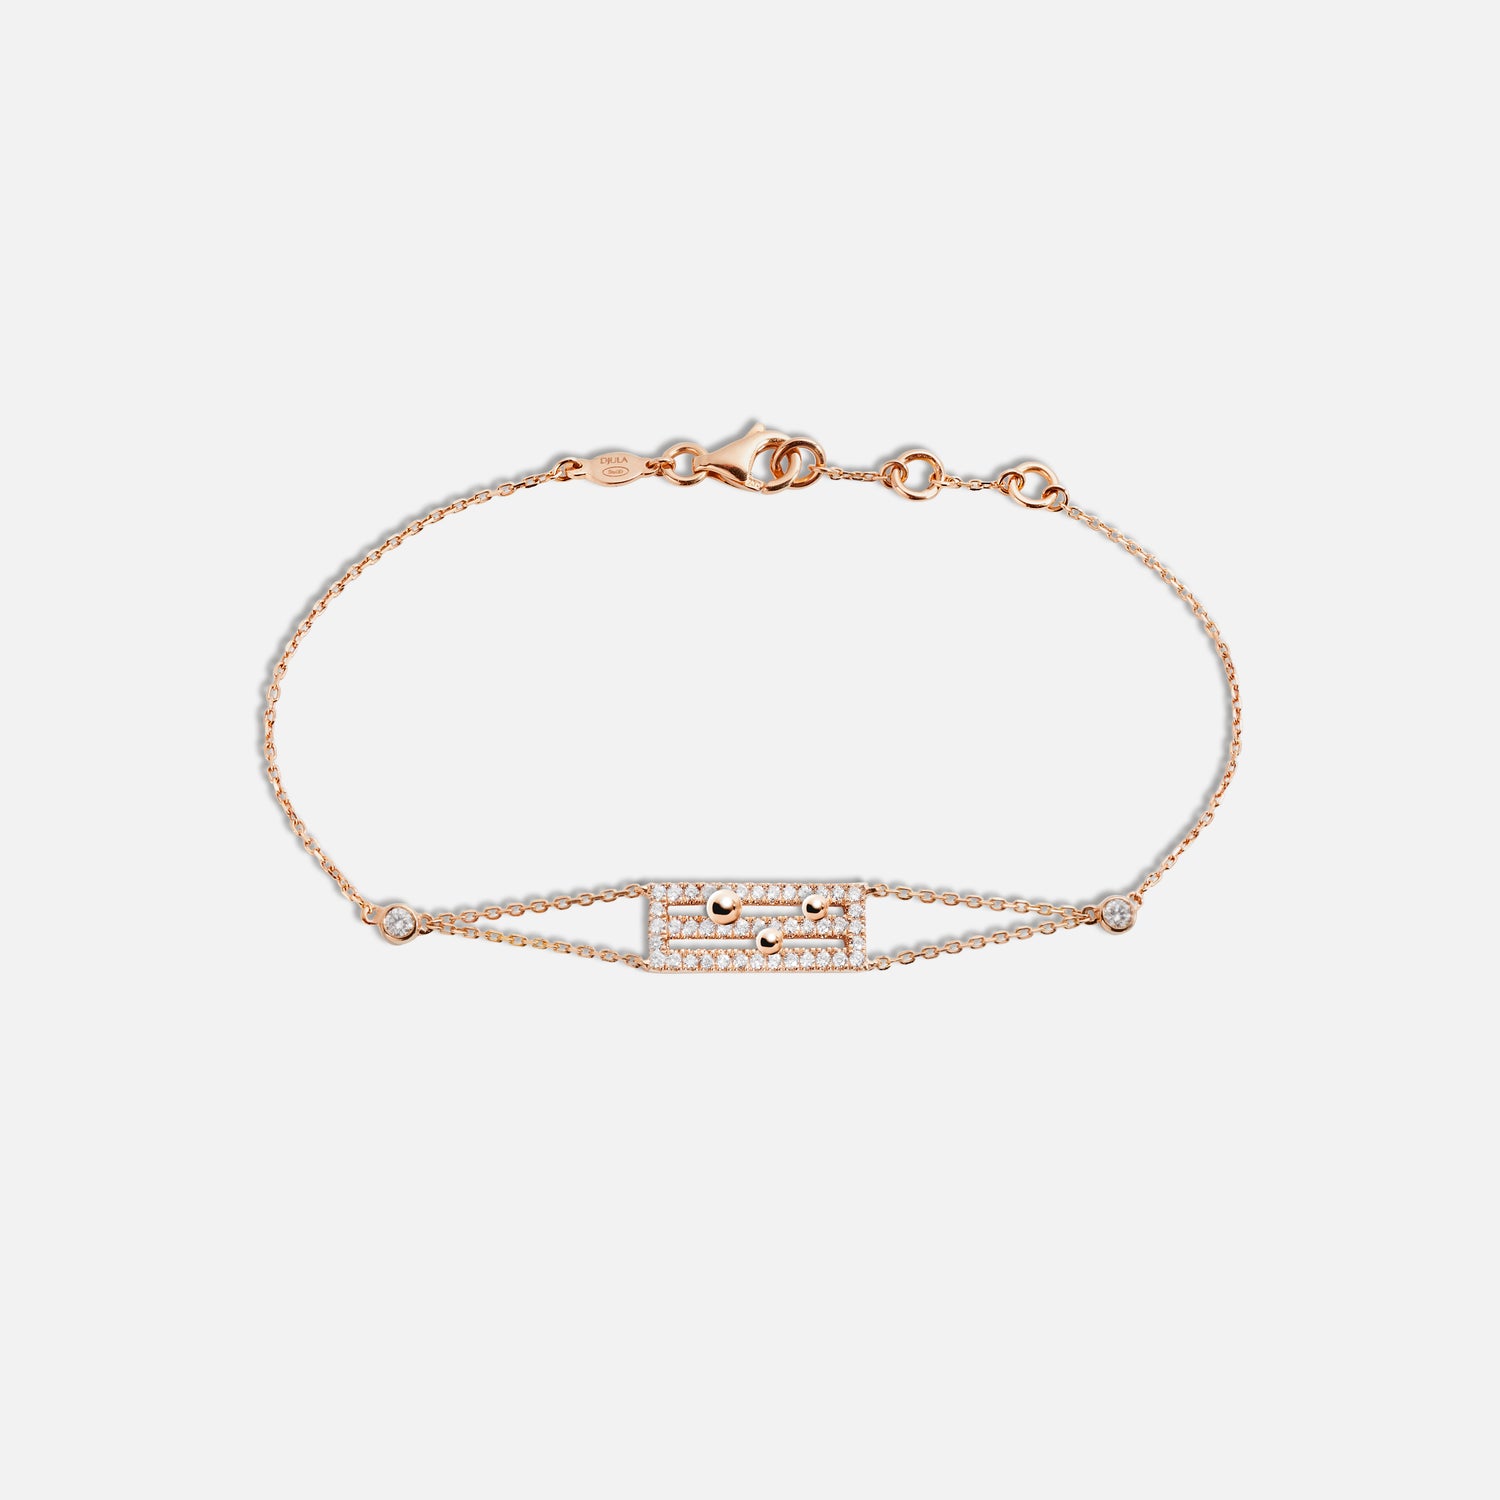 Spell It Out Bracelet | Bracelets, Gold bracelet, Jewelry